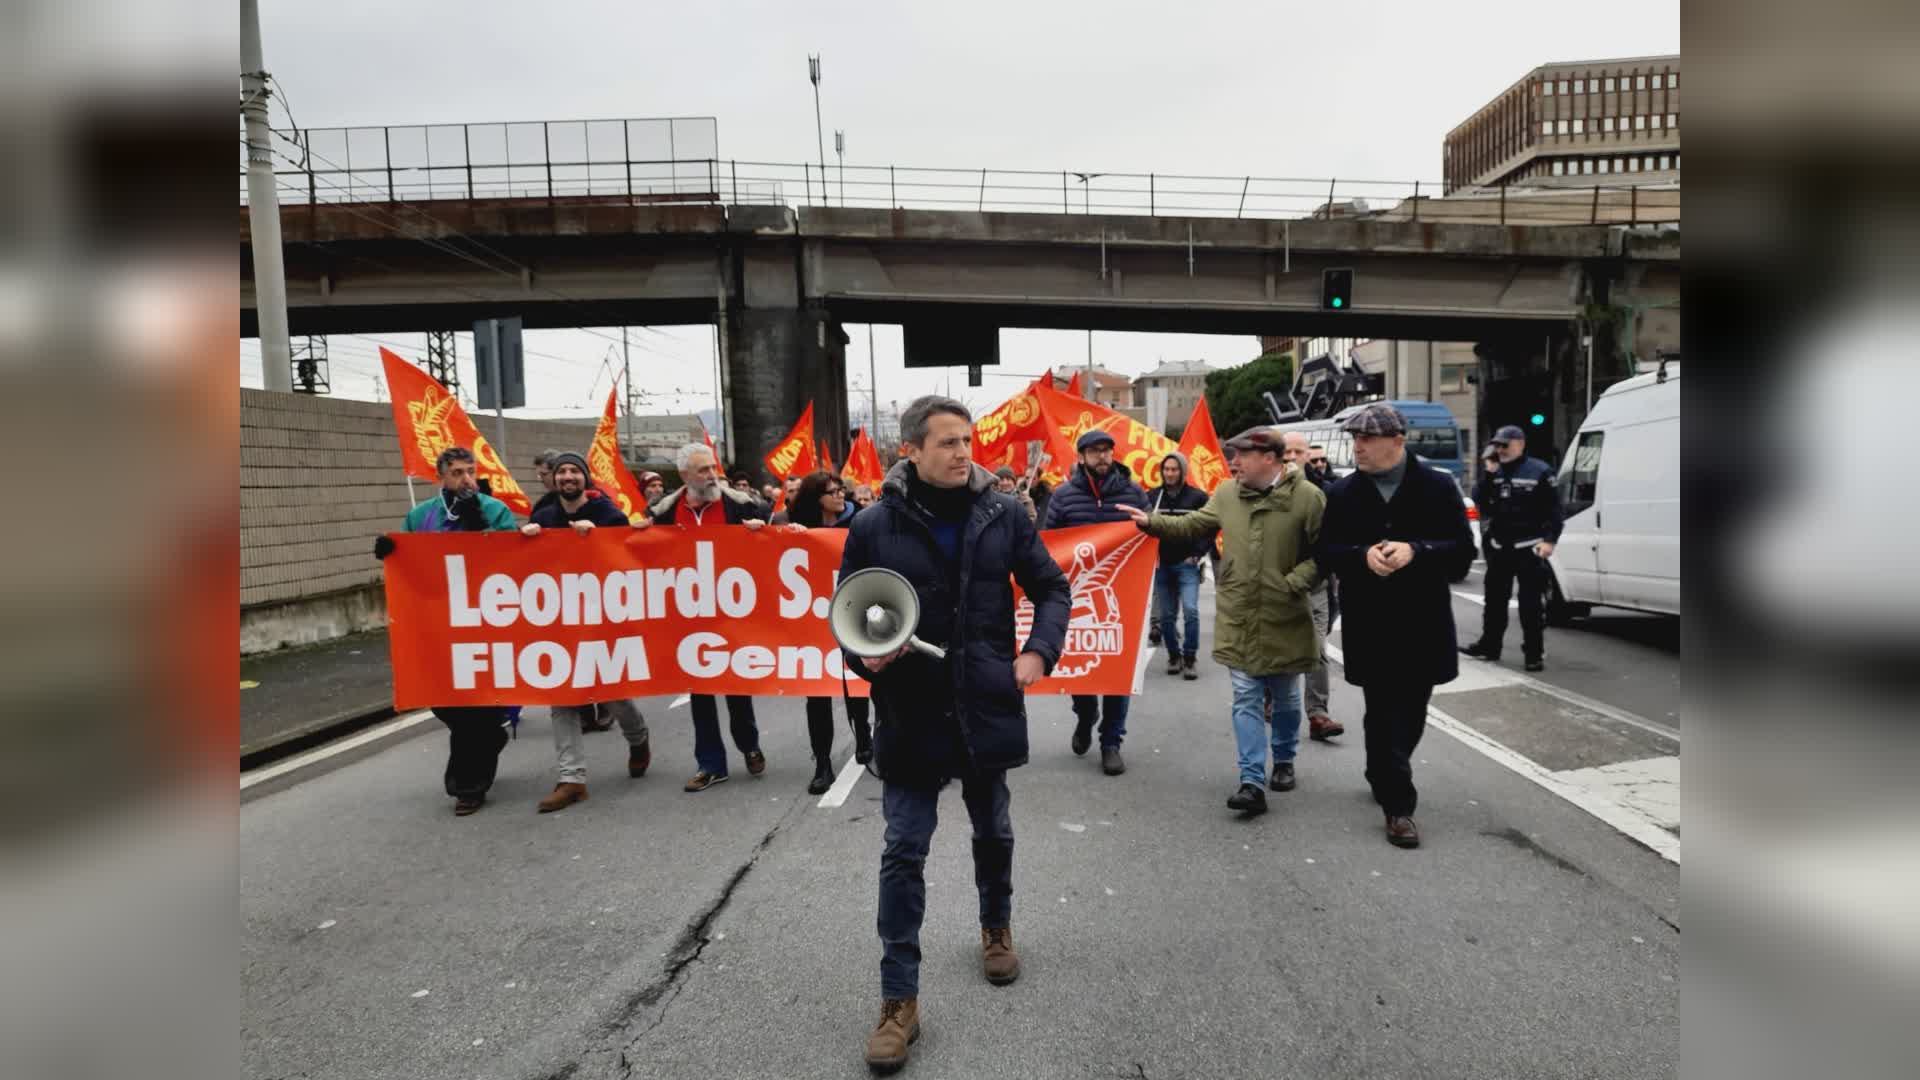 Genova: Leonardo, sciopero contro esternalizzazione di parte delle attività aziendali